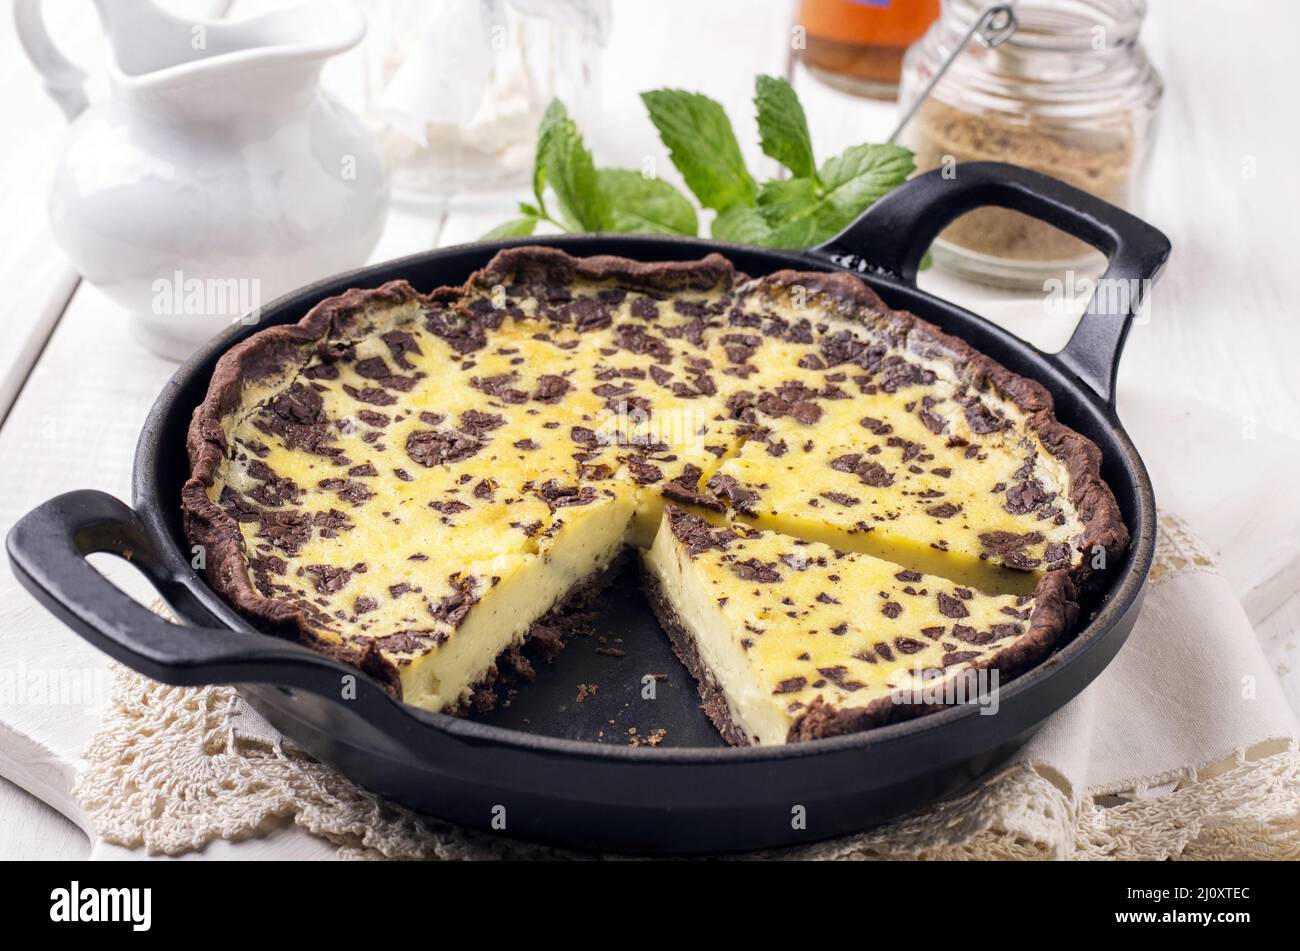 Lemon tarte with chocolate Stock Photo